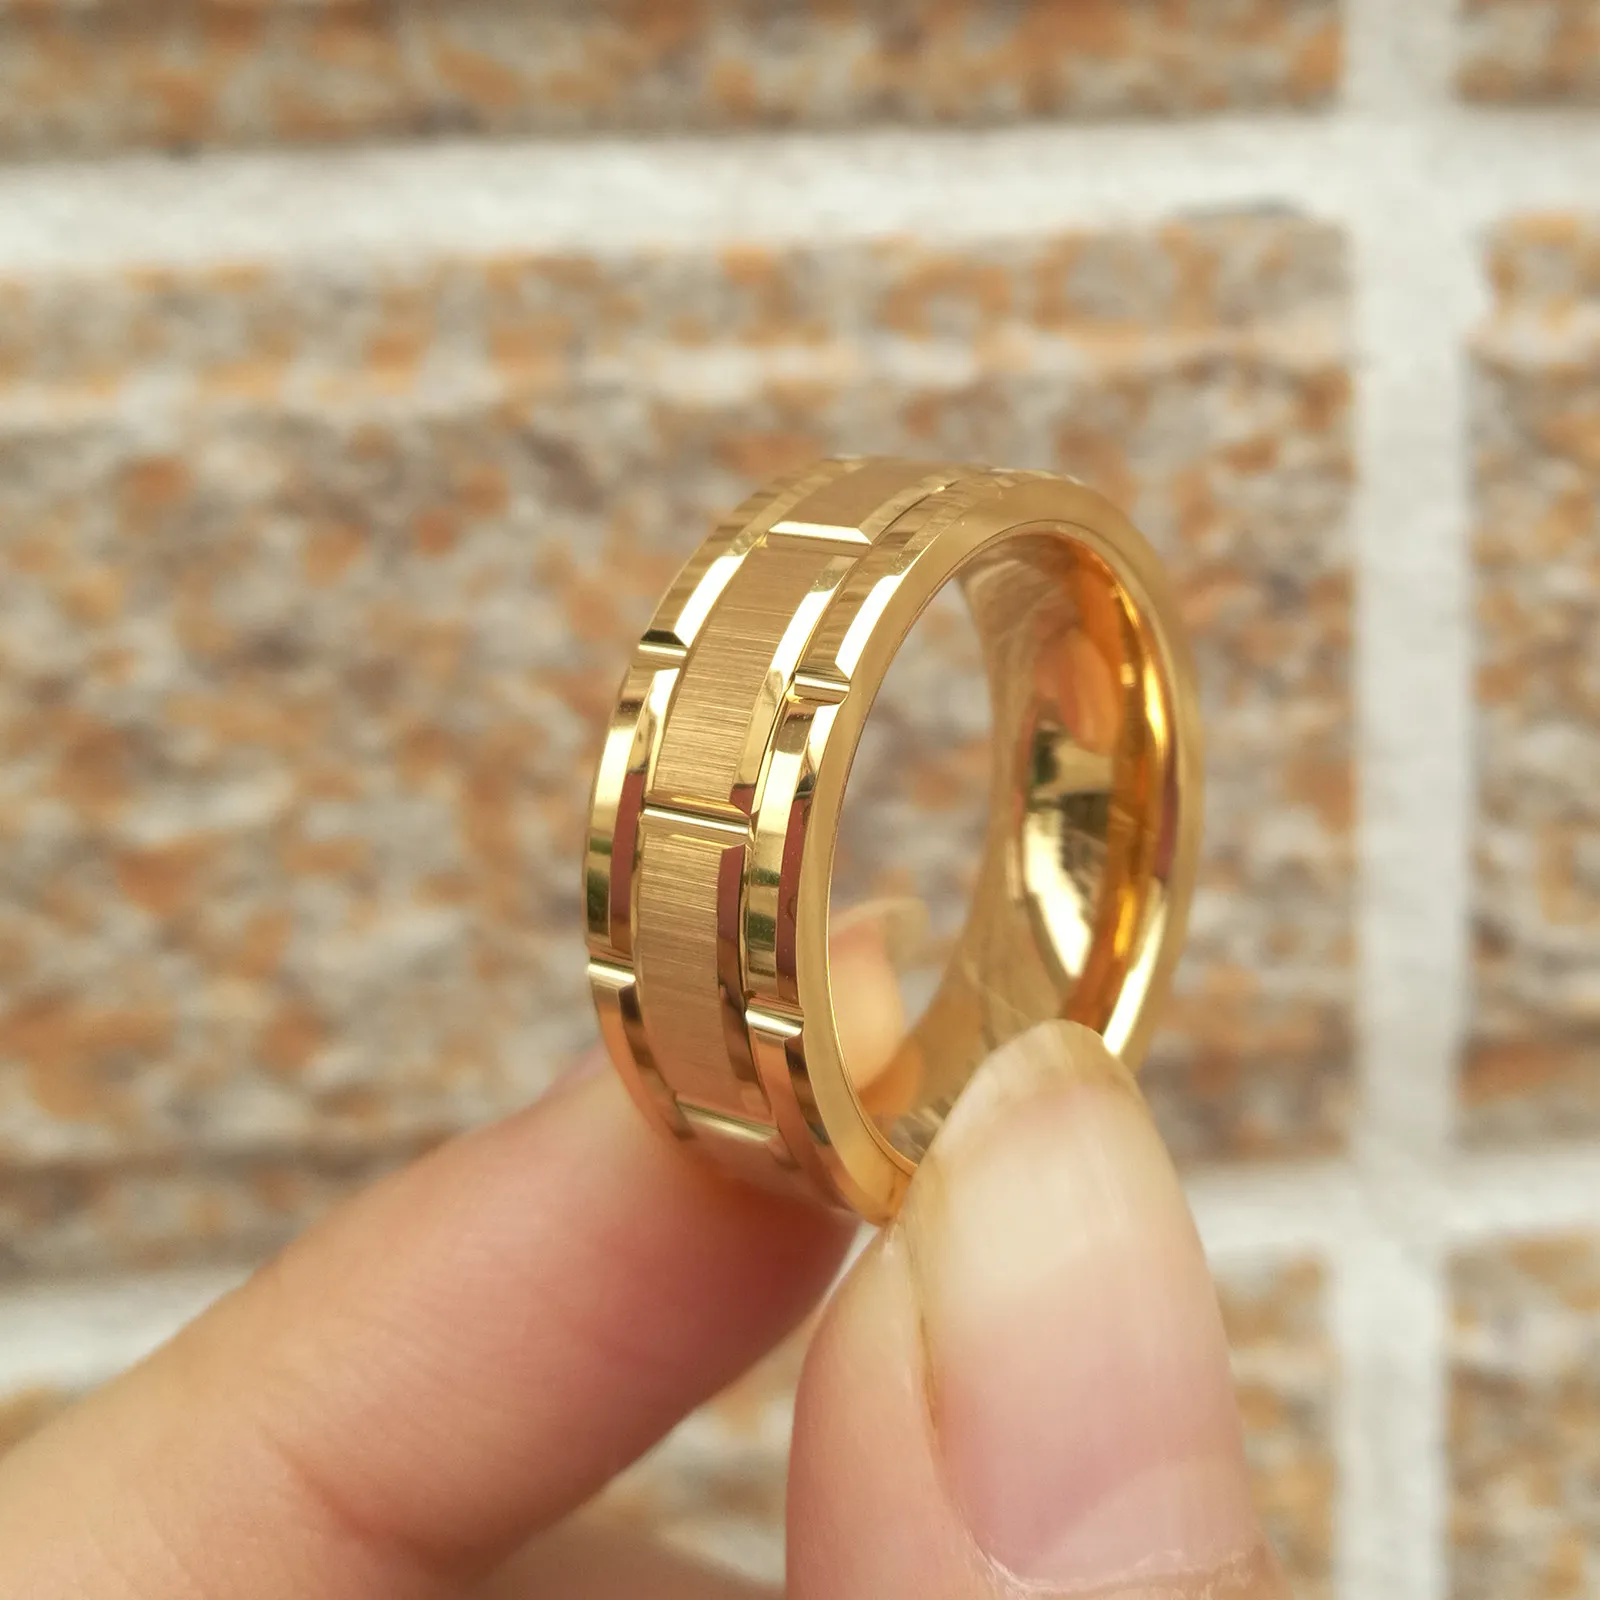 Newshe Herren-Wolframkarbid-Ring, 8 mm, Gelbgold, Ziegelsteinmuster, gebürstete Bänder für Ihn, Hochzeitsschmuck, Größe 913, Y11282757571